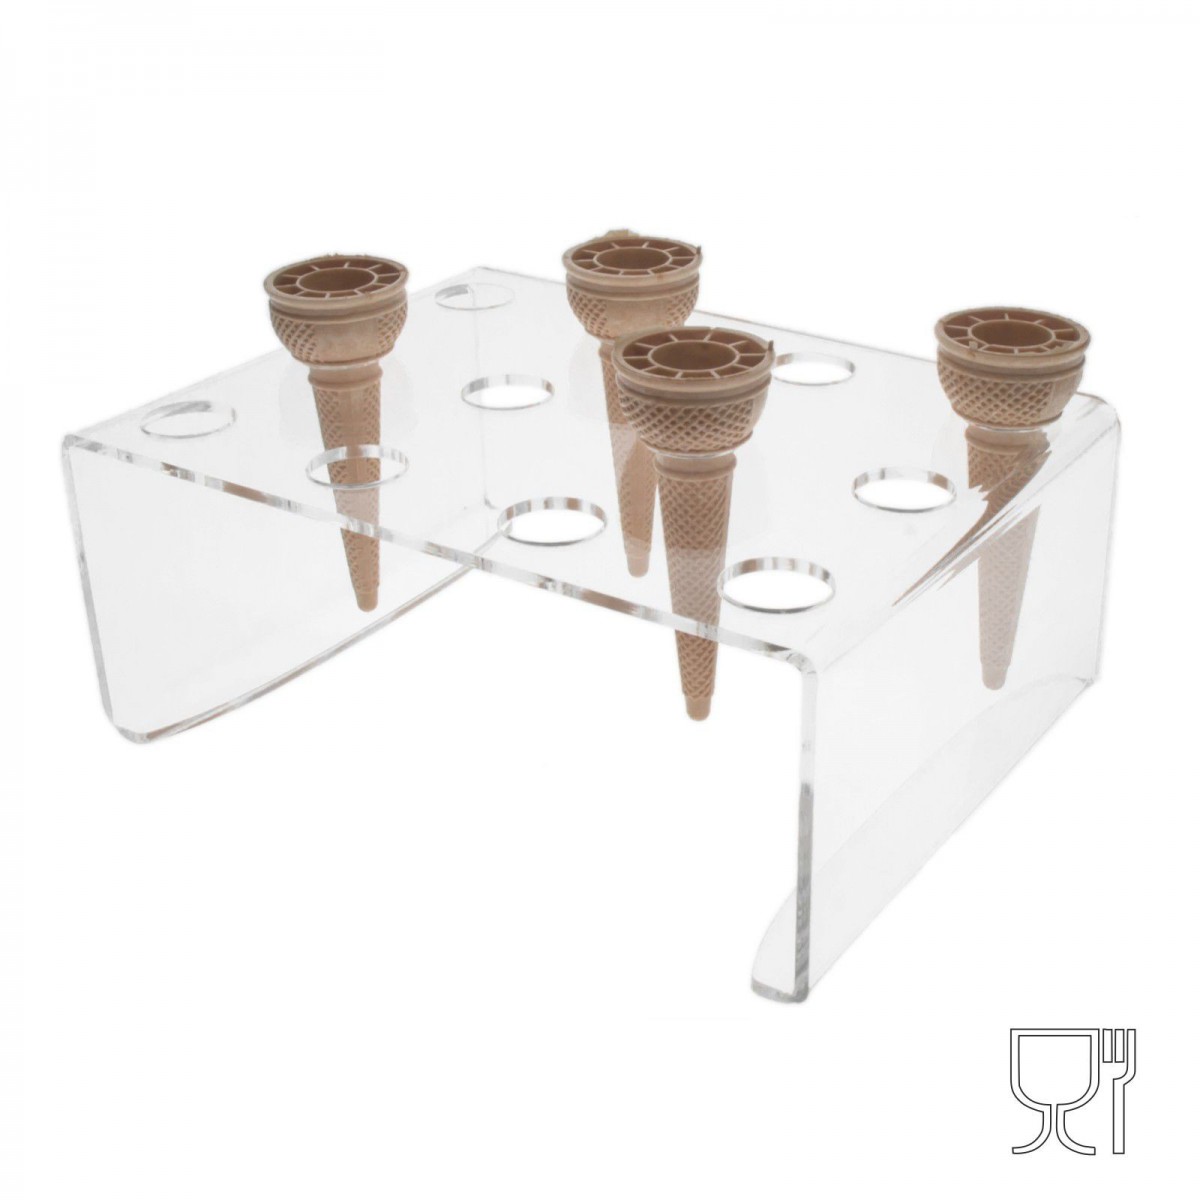 Expositor de mostrador para conos de helado en plexiglás transparente de 12 orificios